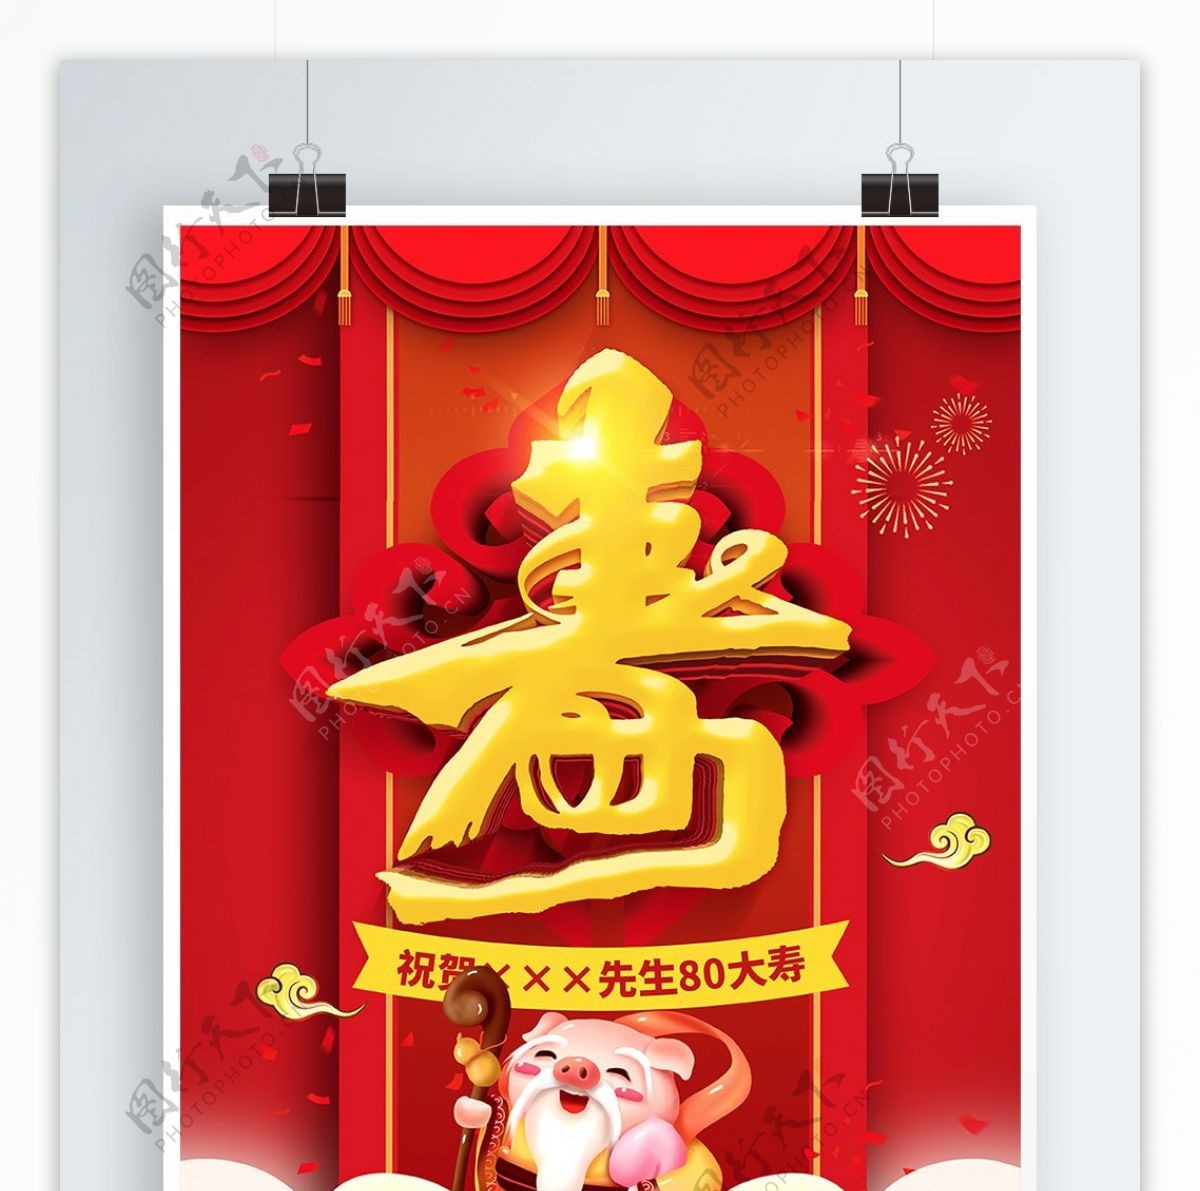 红色喜庆中式大寿寿宴宣传海报